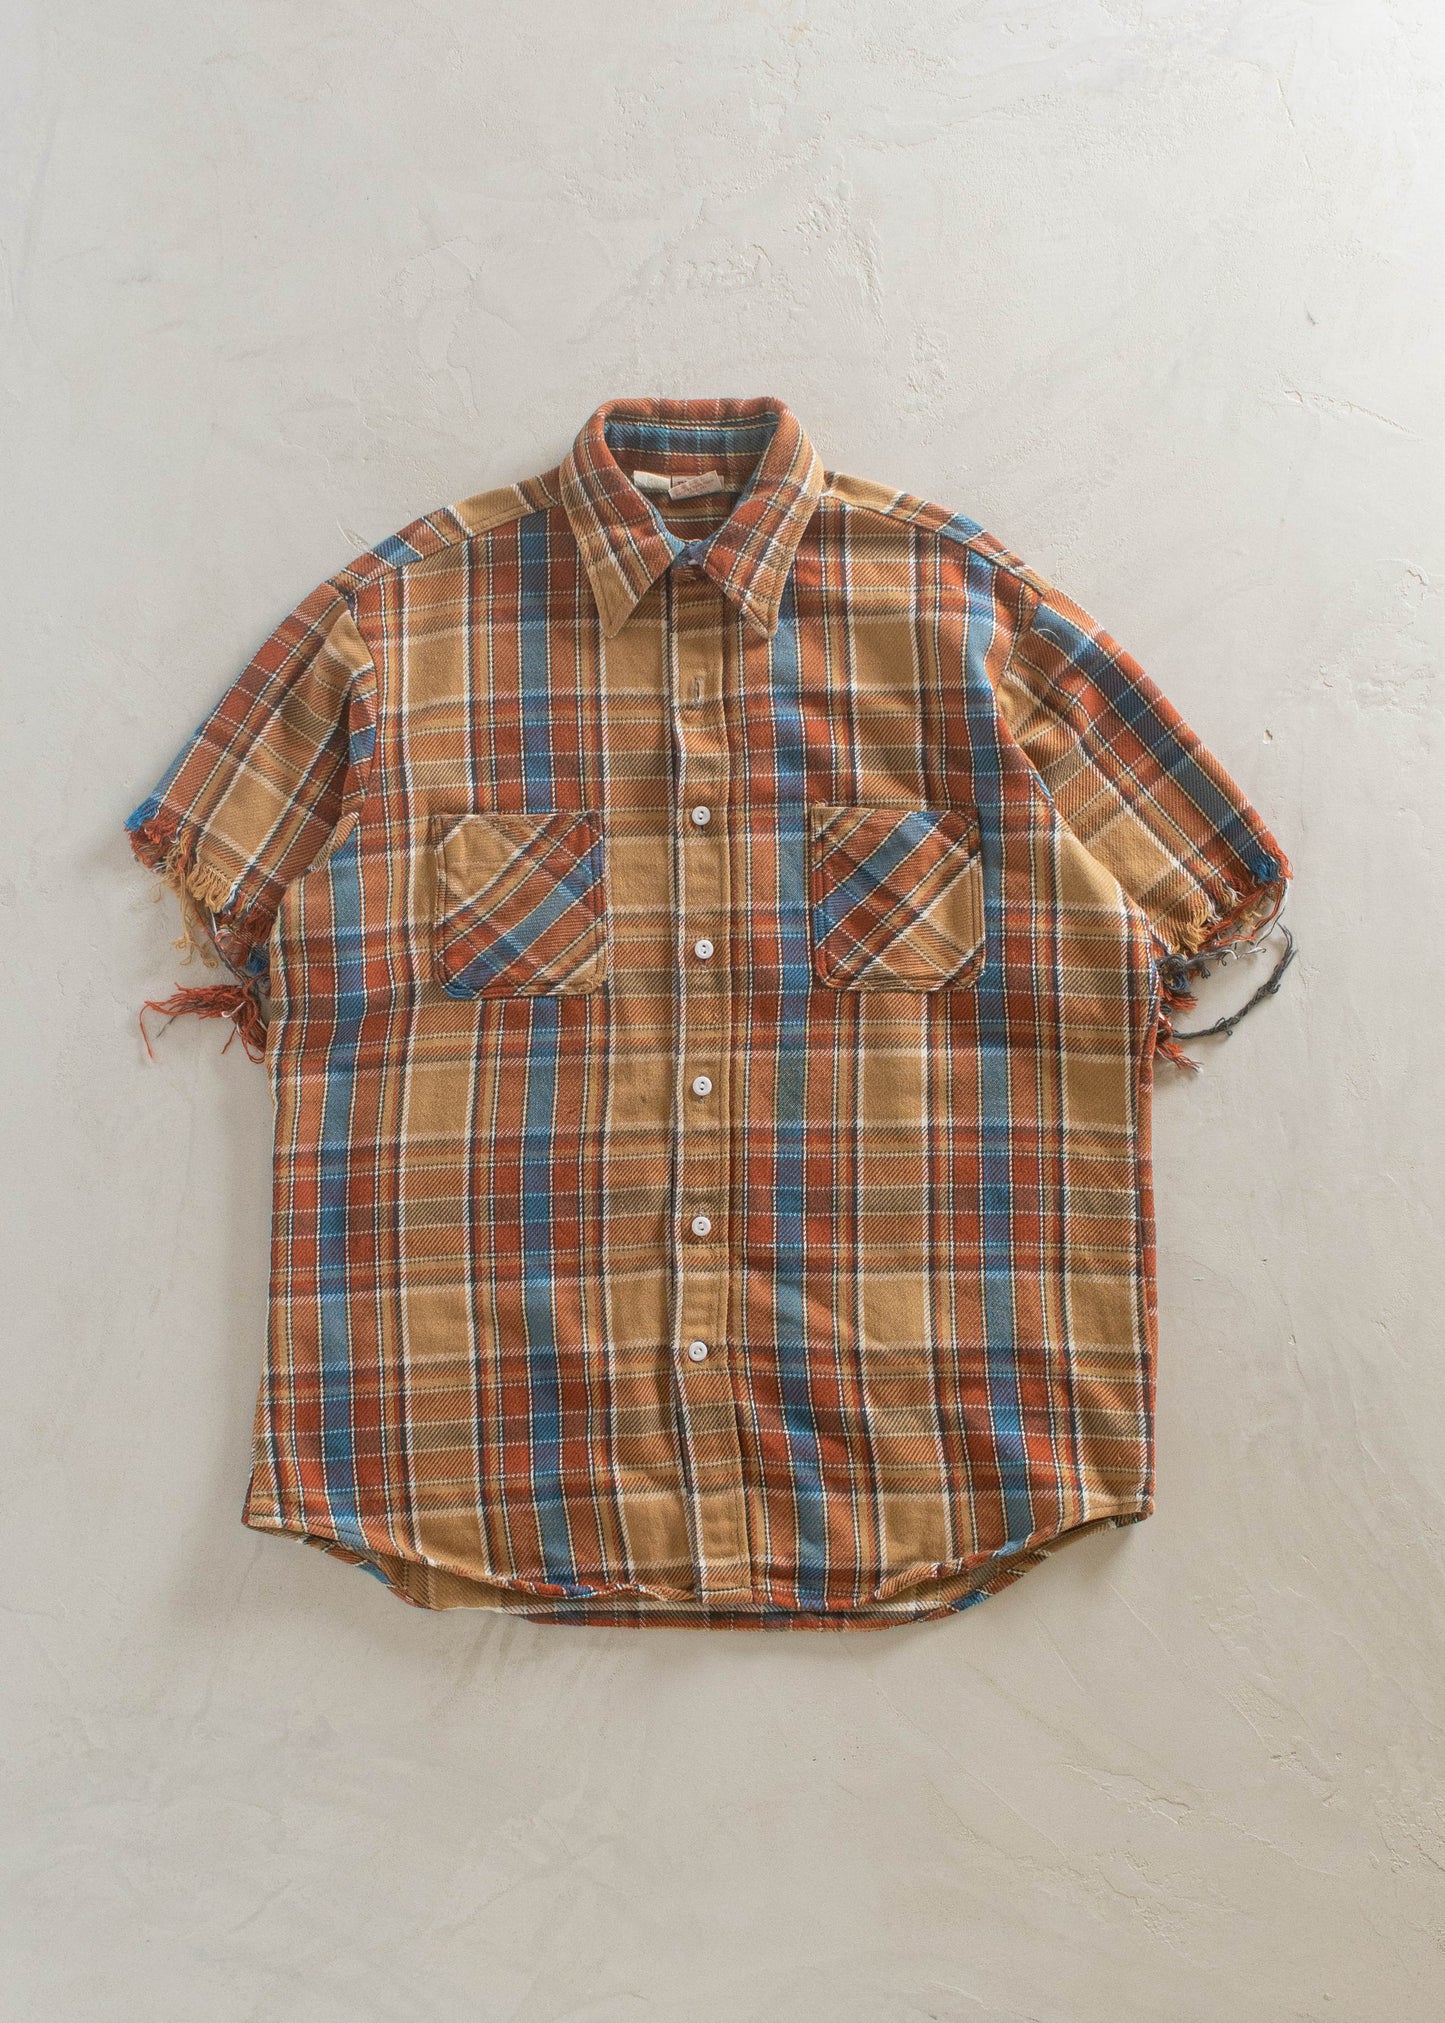 1970s Big Mac Cotton Flannel Short Sleeve Button Up Shirt Size XL/2XL